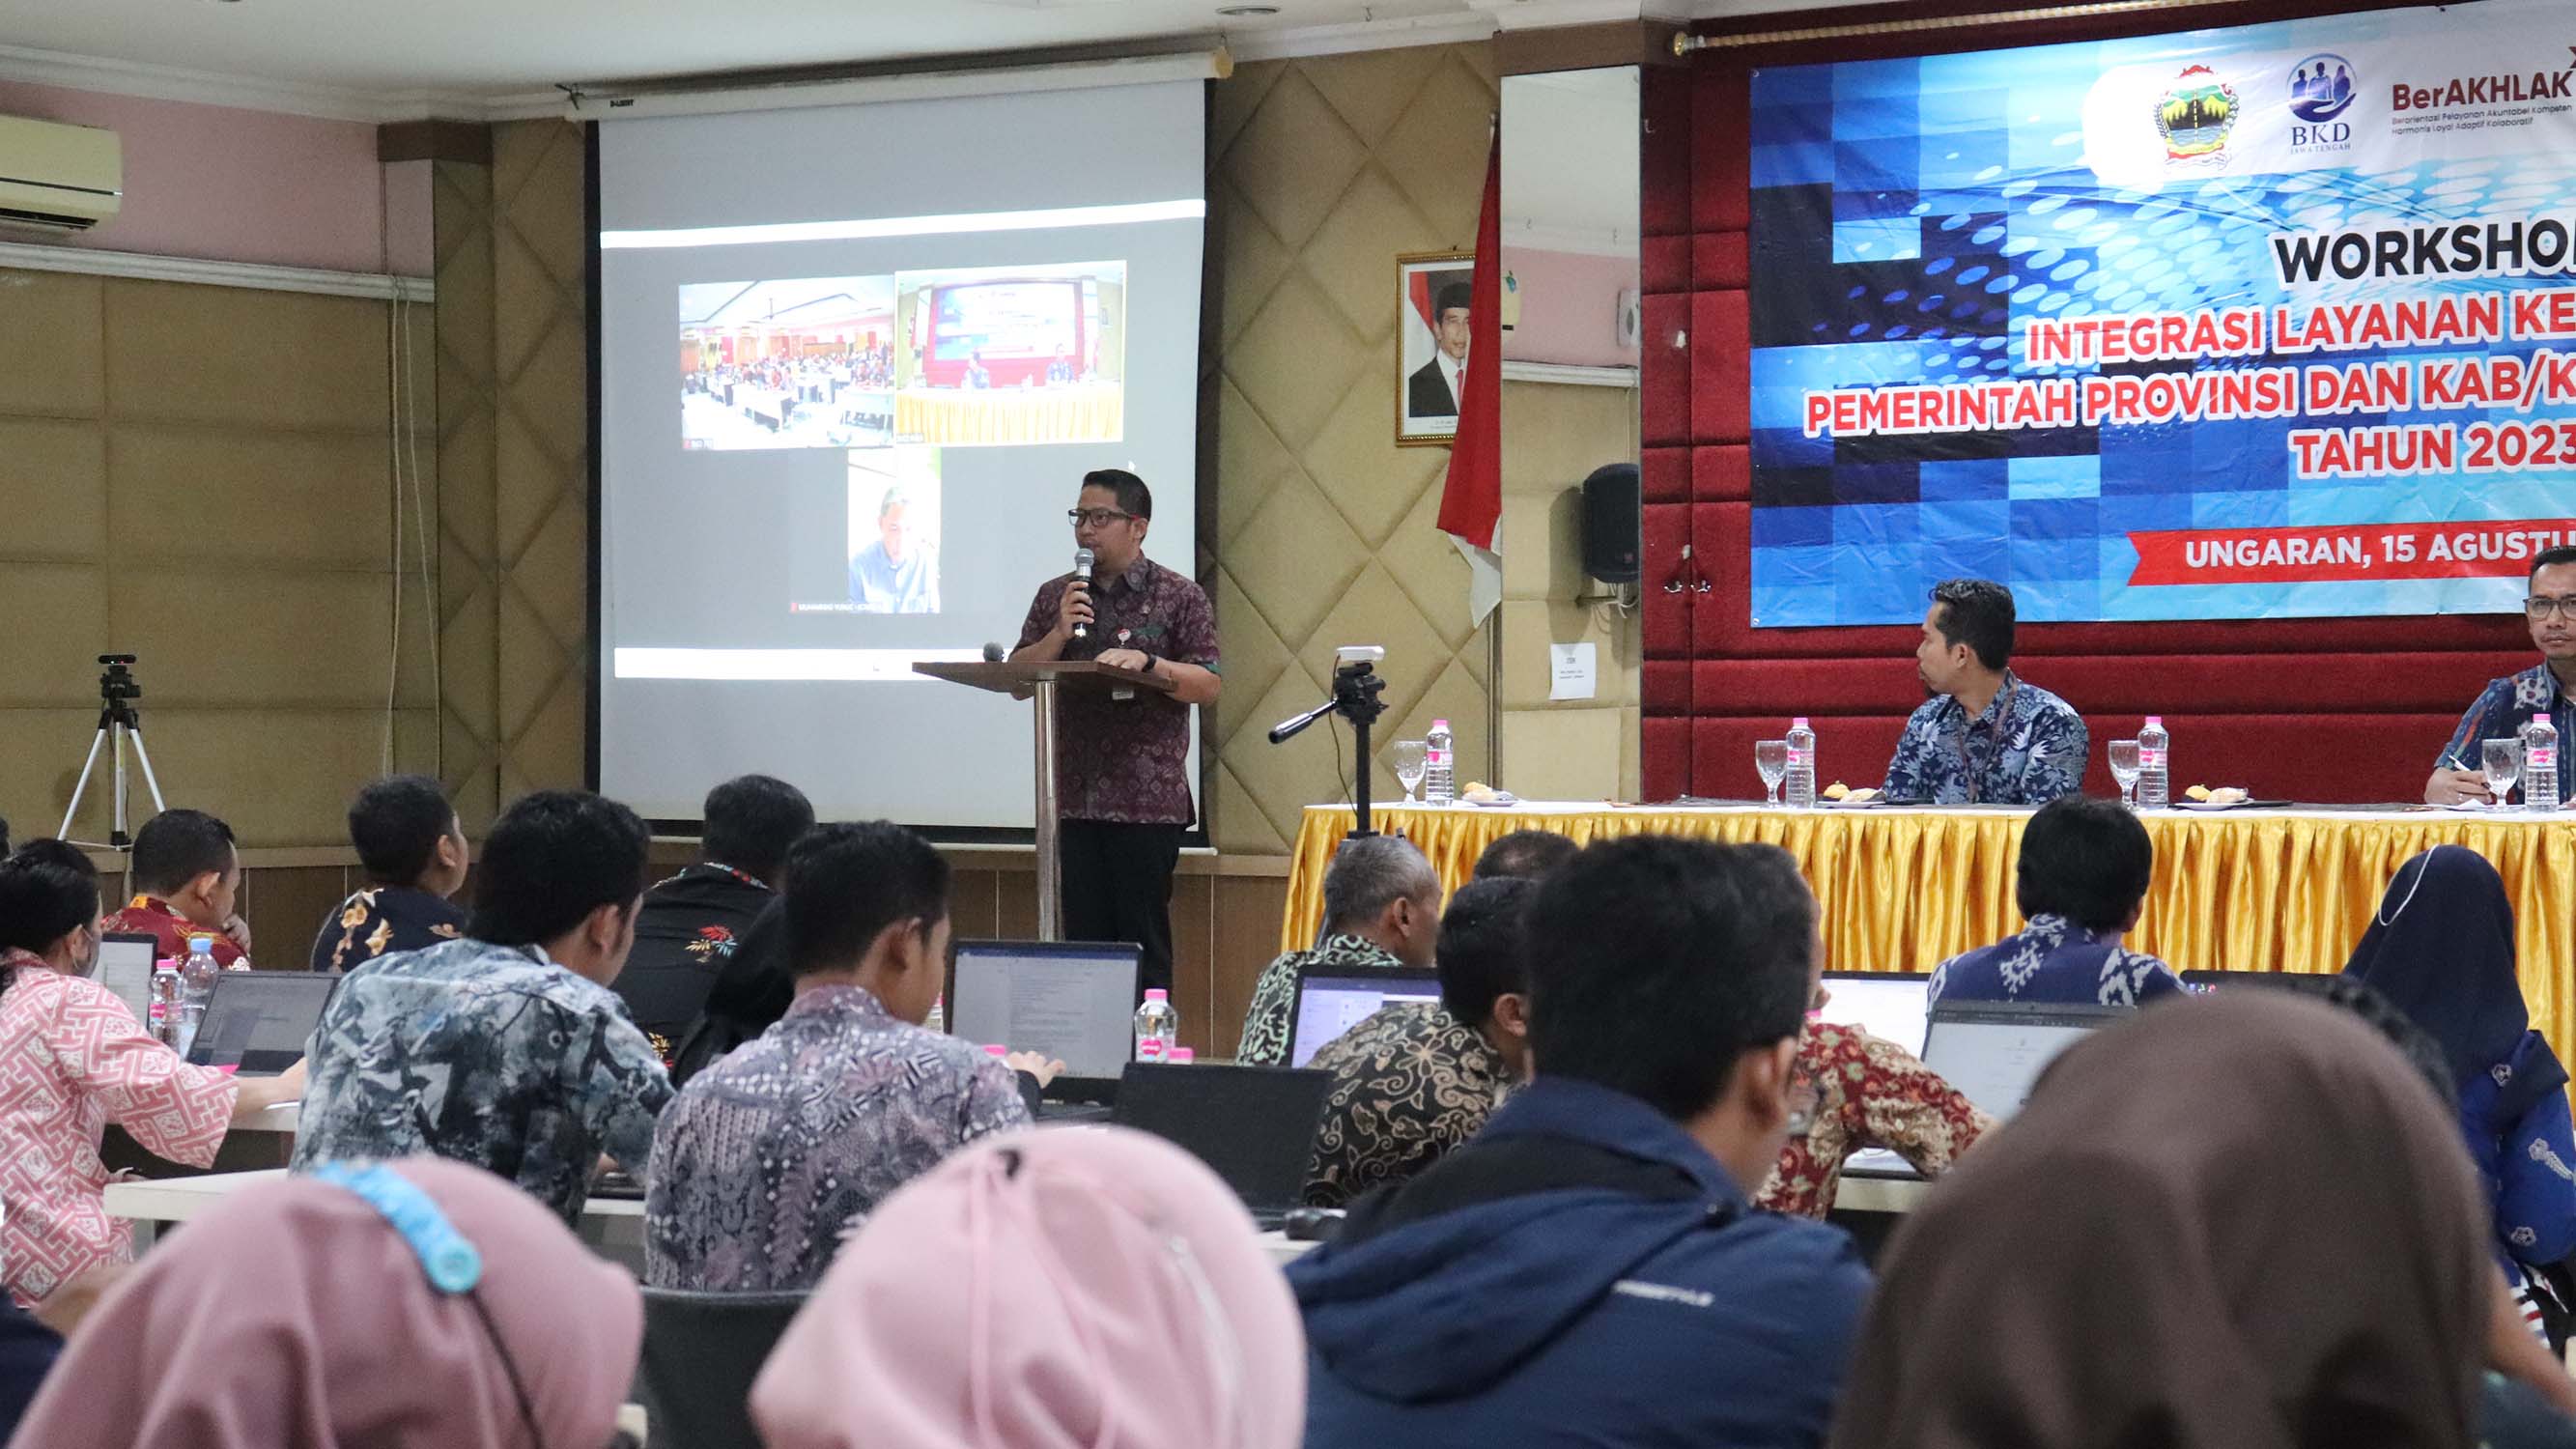 Workshop Integrasi Layanan Kepegawaian Pemerintah Provinsi dan Kab/kota se-Jawa Tengah